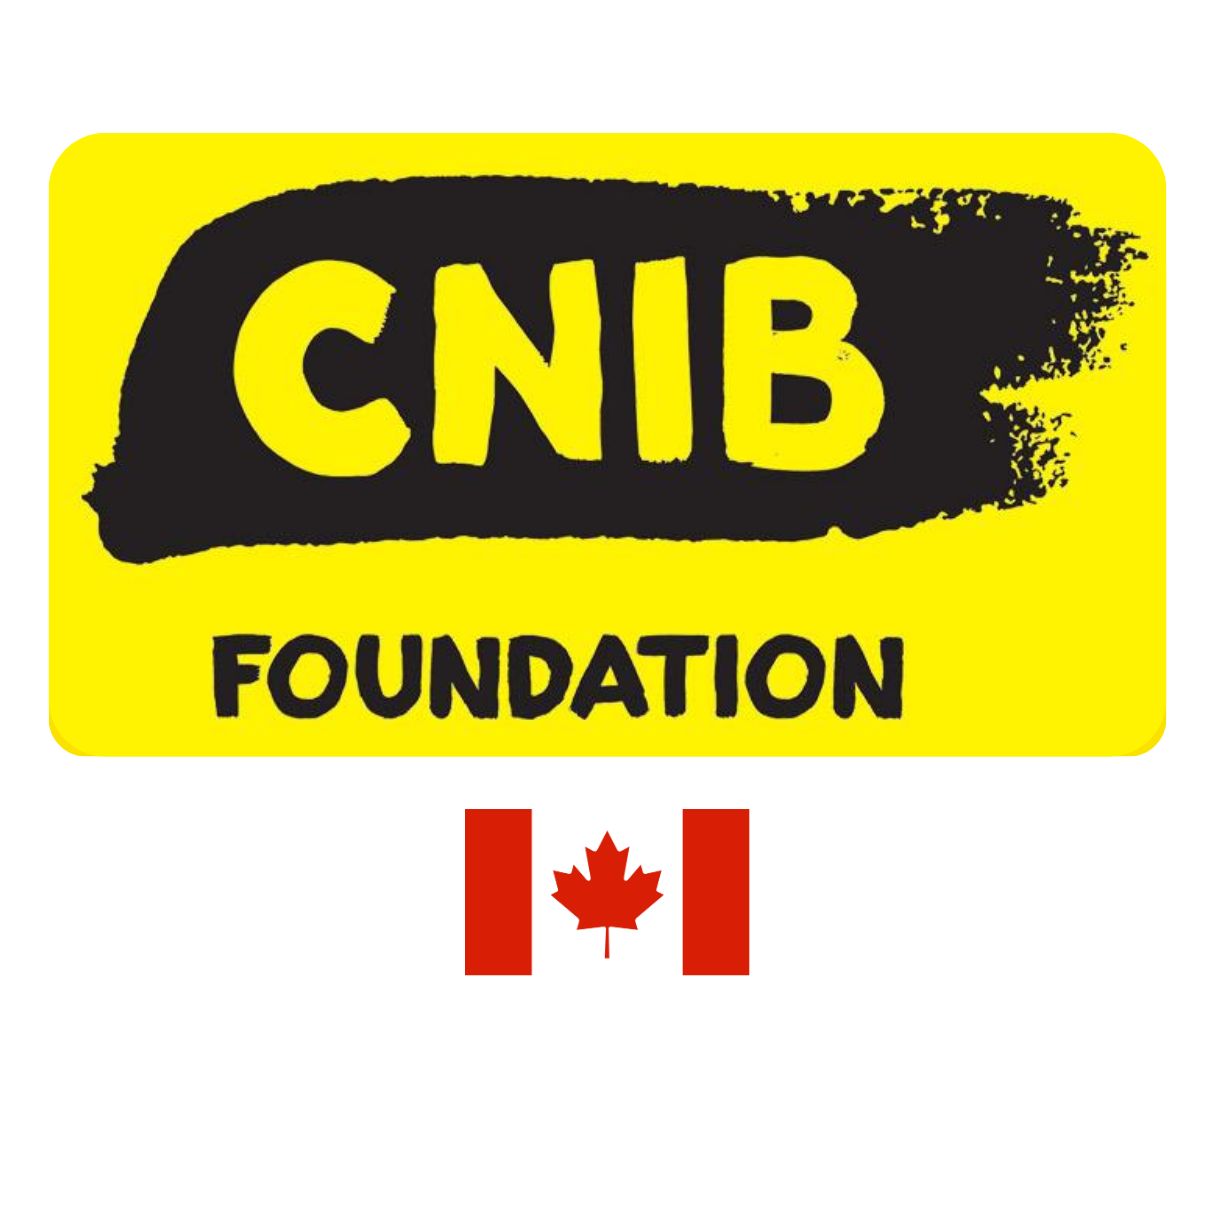 CNIB foundation logo and Canada flag